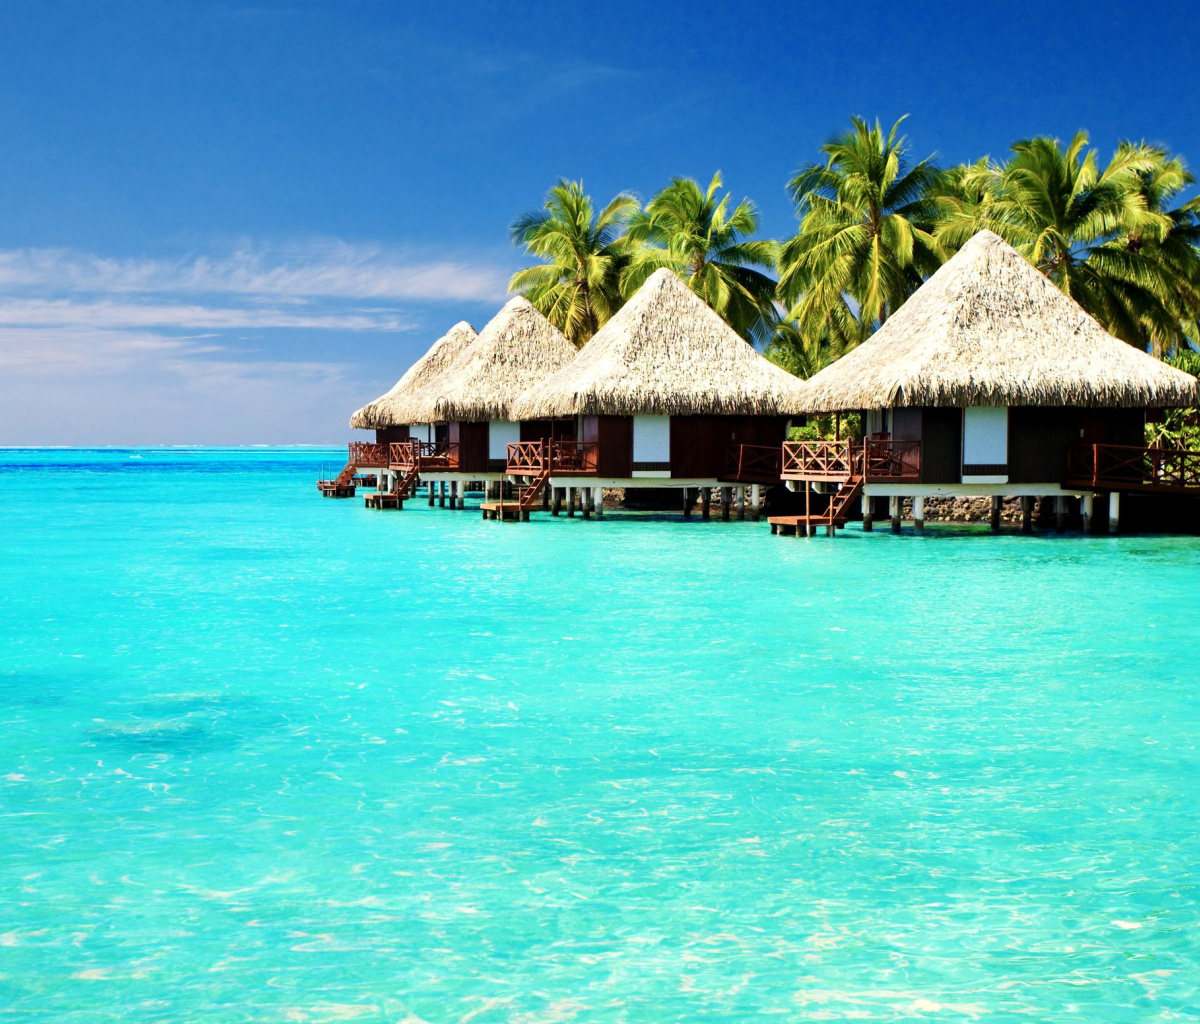 Maldives Islands best Destination for Honeymoon screenshot #1 1200x1024